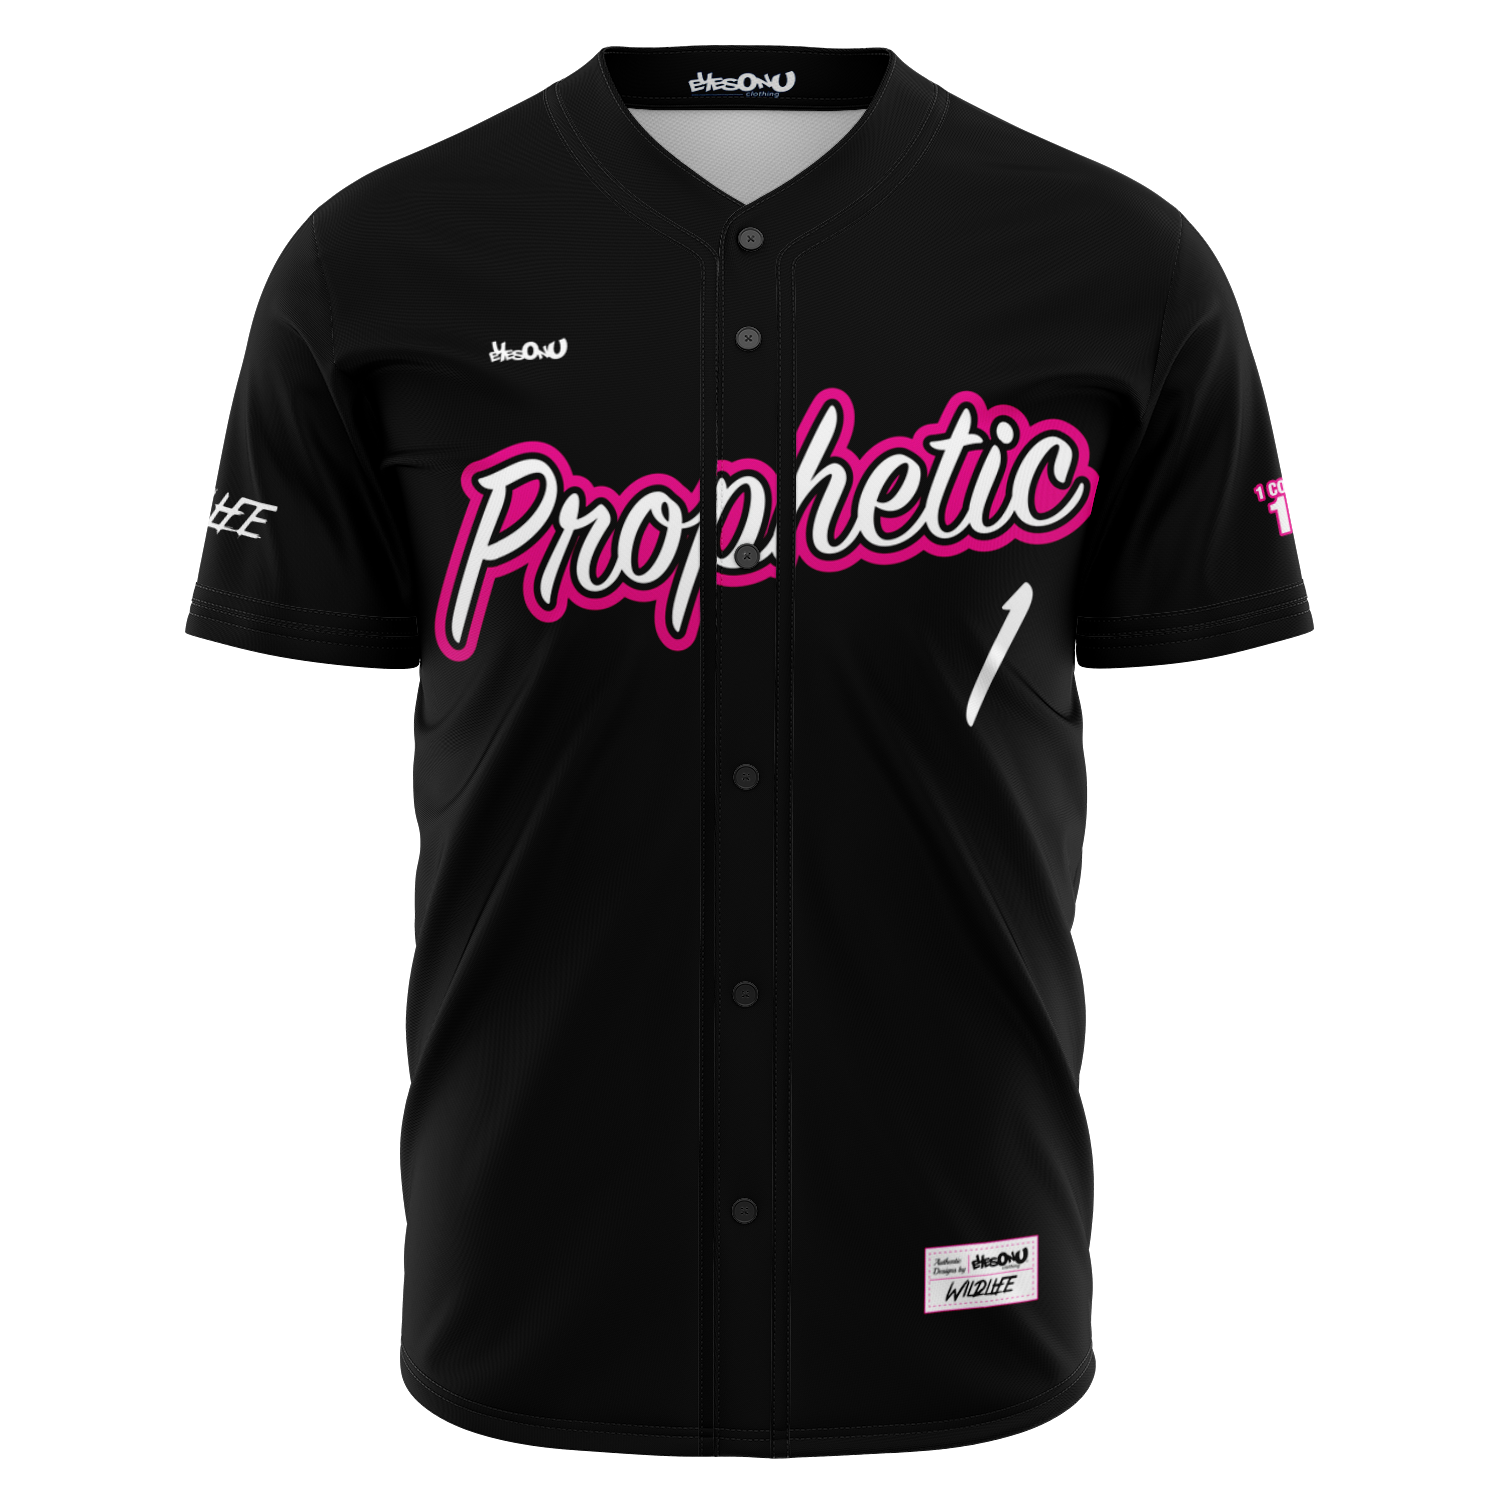 i_Glow_ Prophetic Baseball Jersey (black)